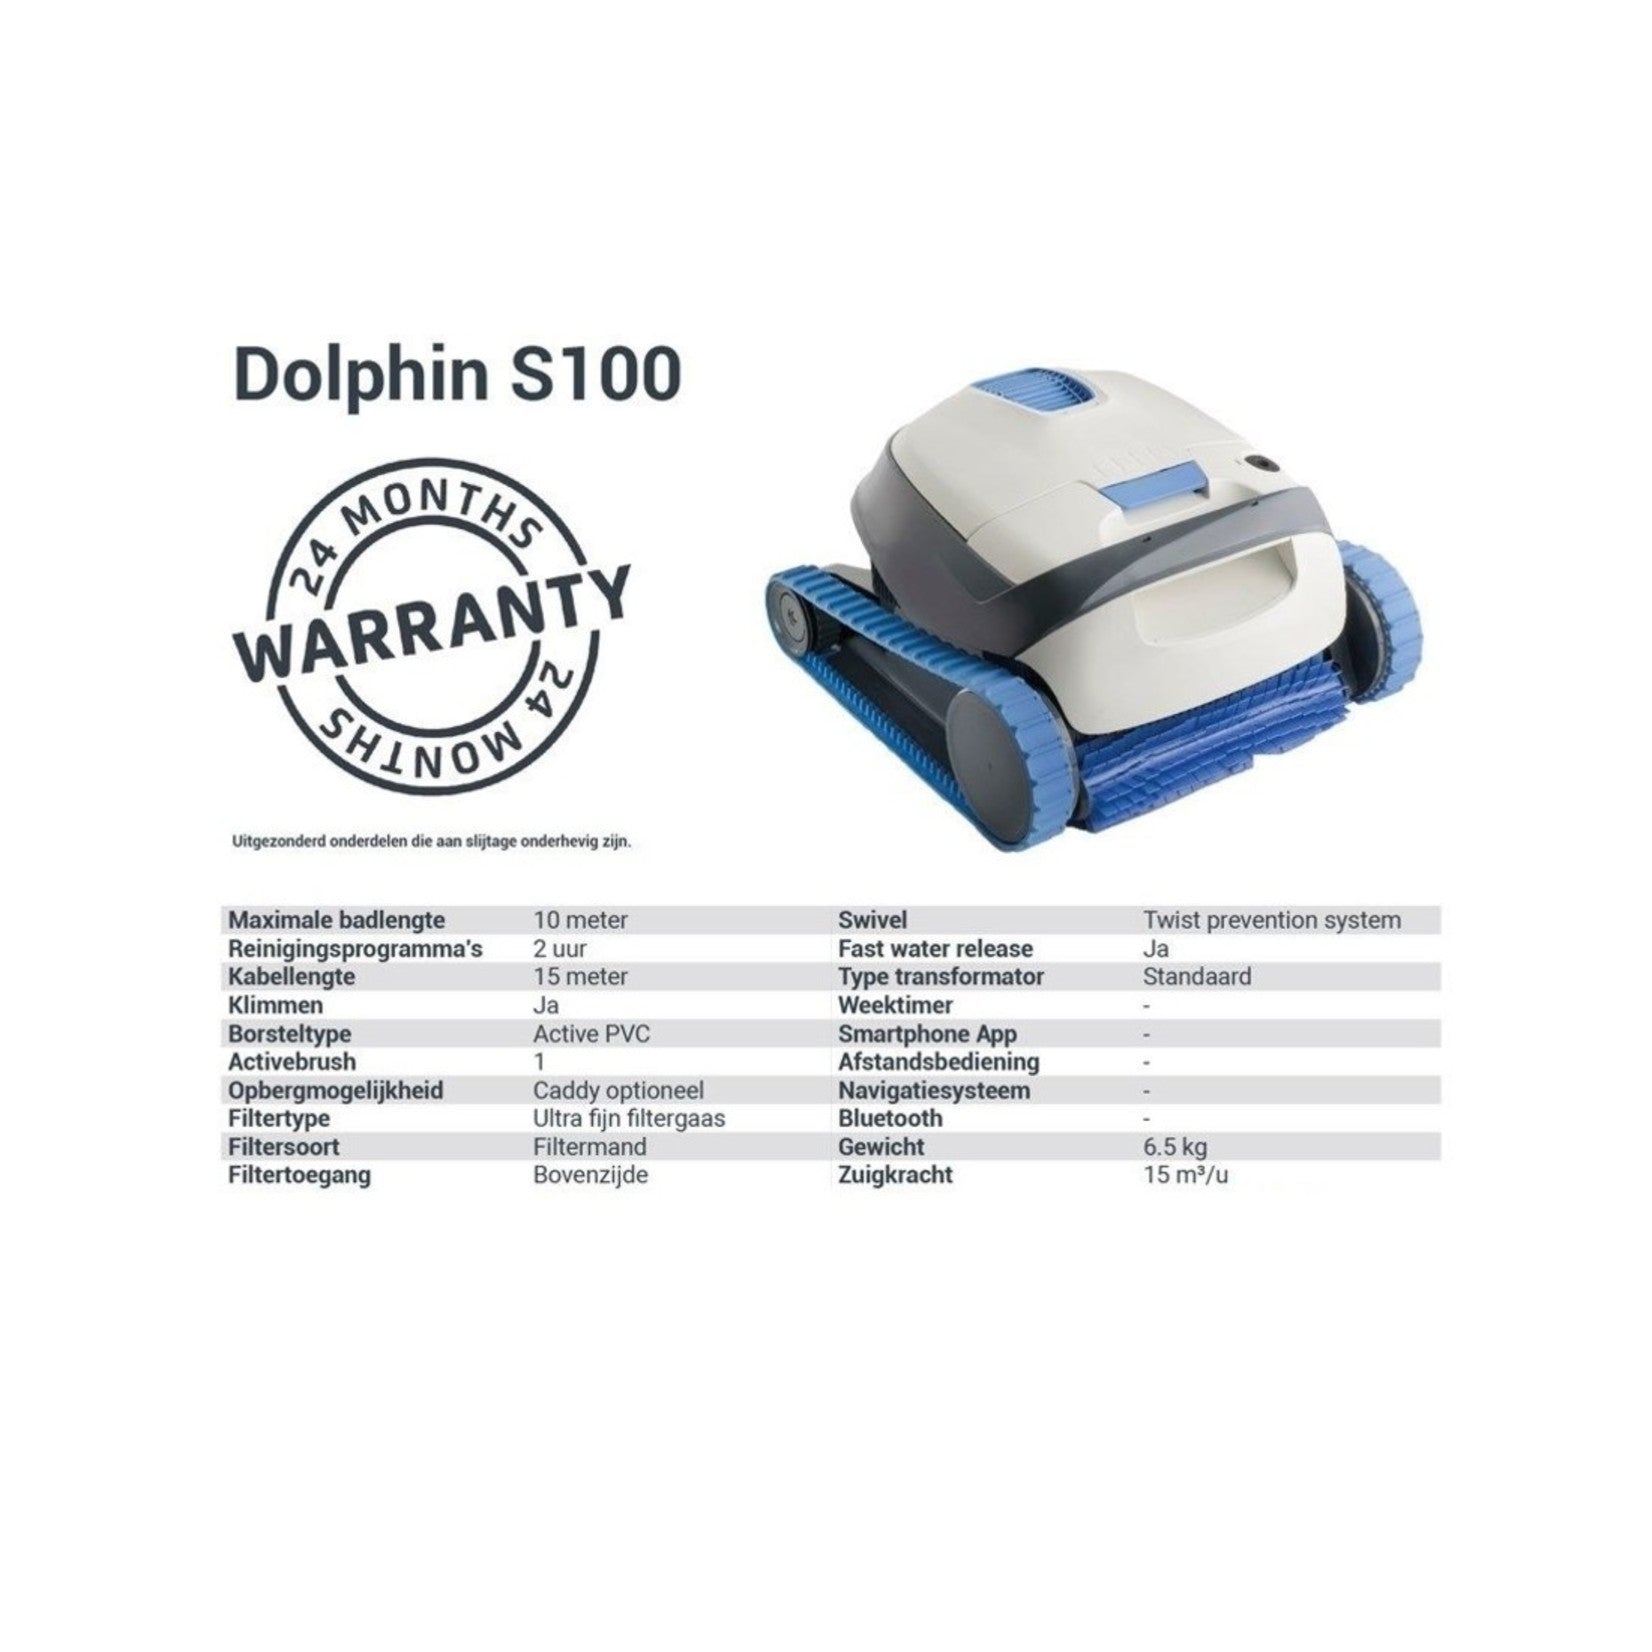 Dolphin S100 Zwembadrobot